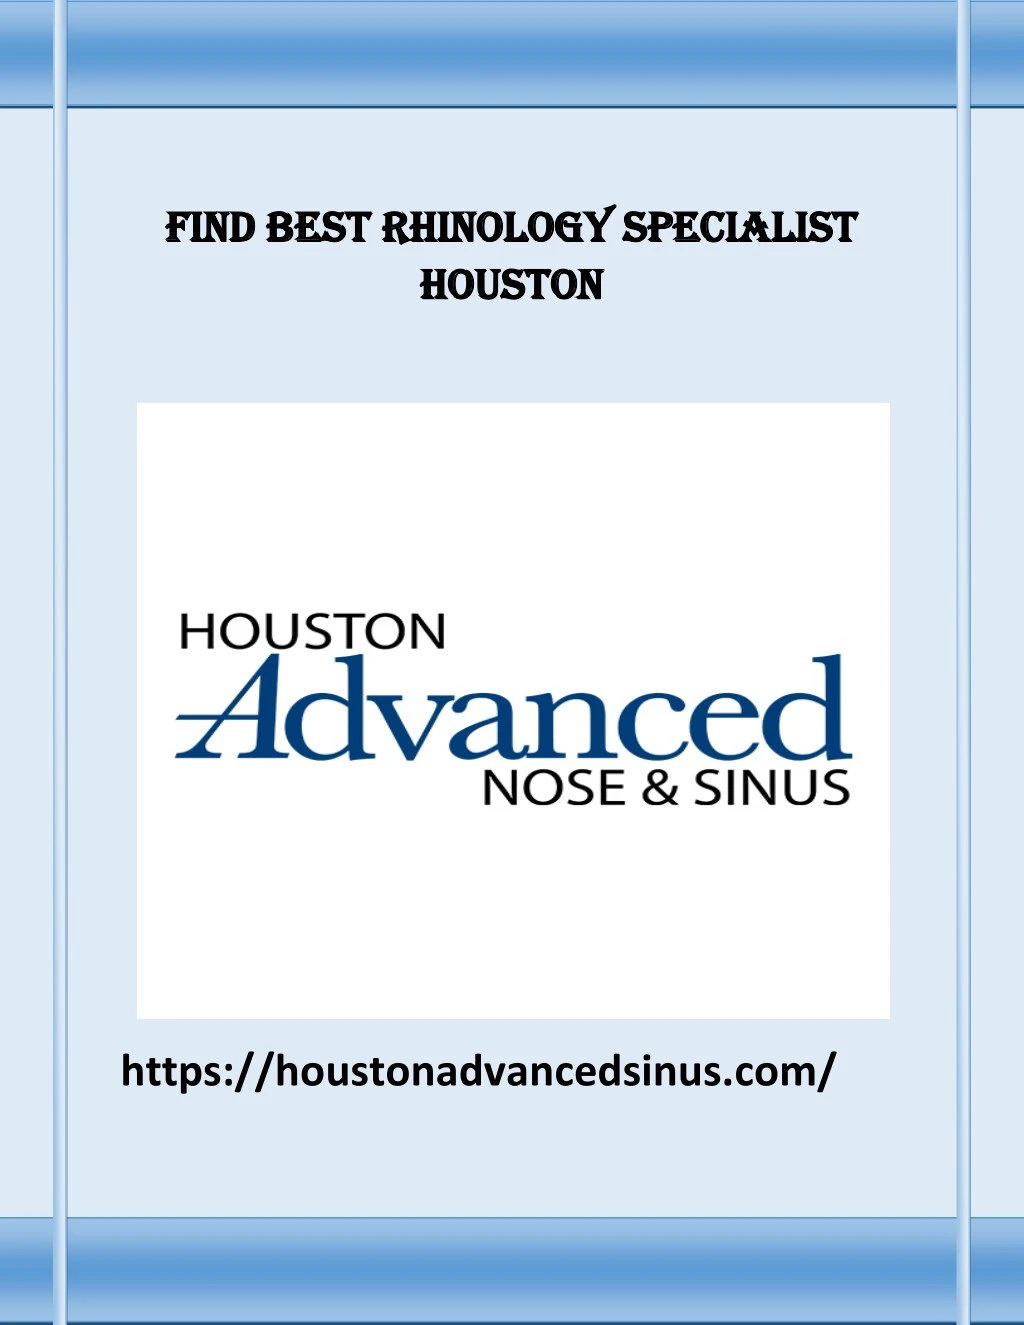 find best rhinology specialist find best